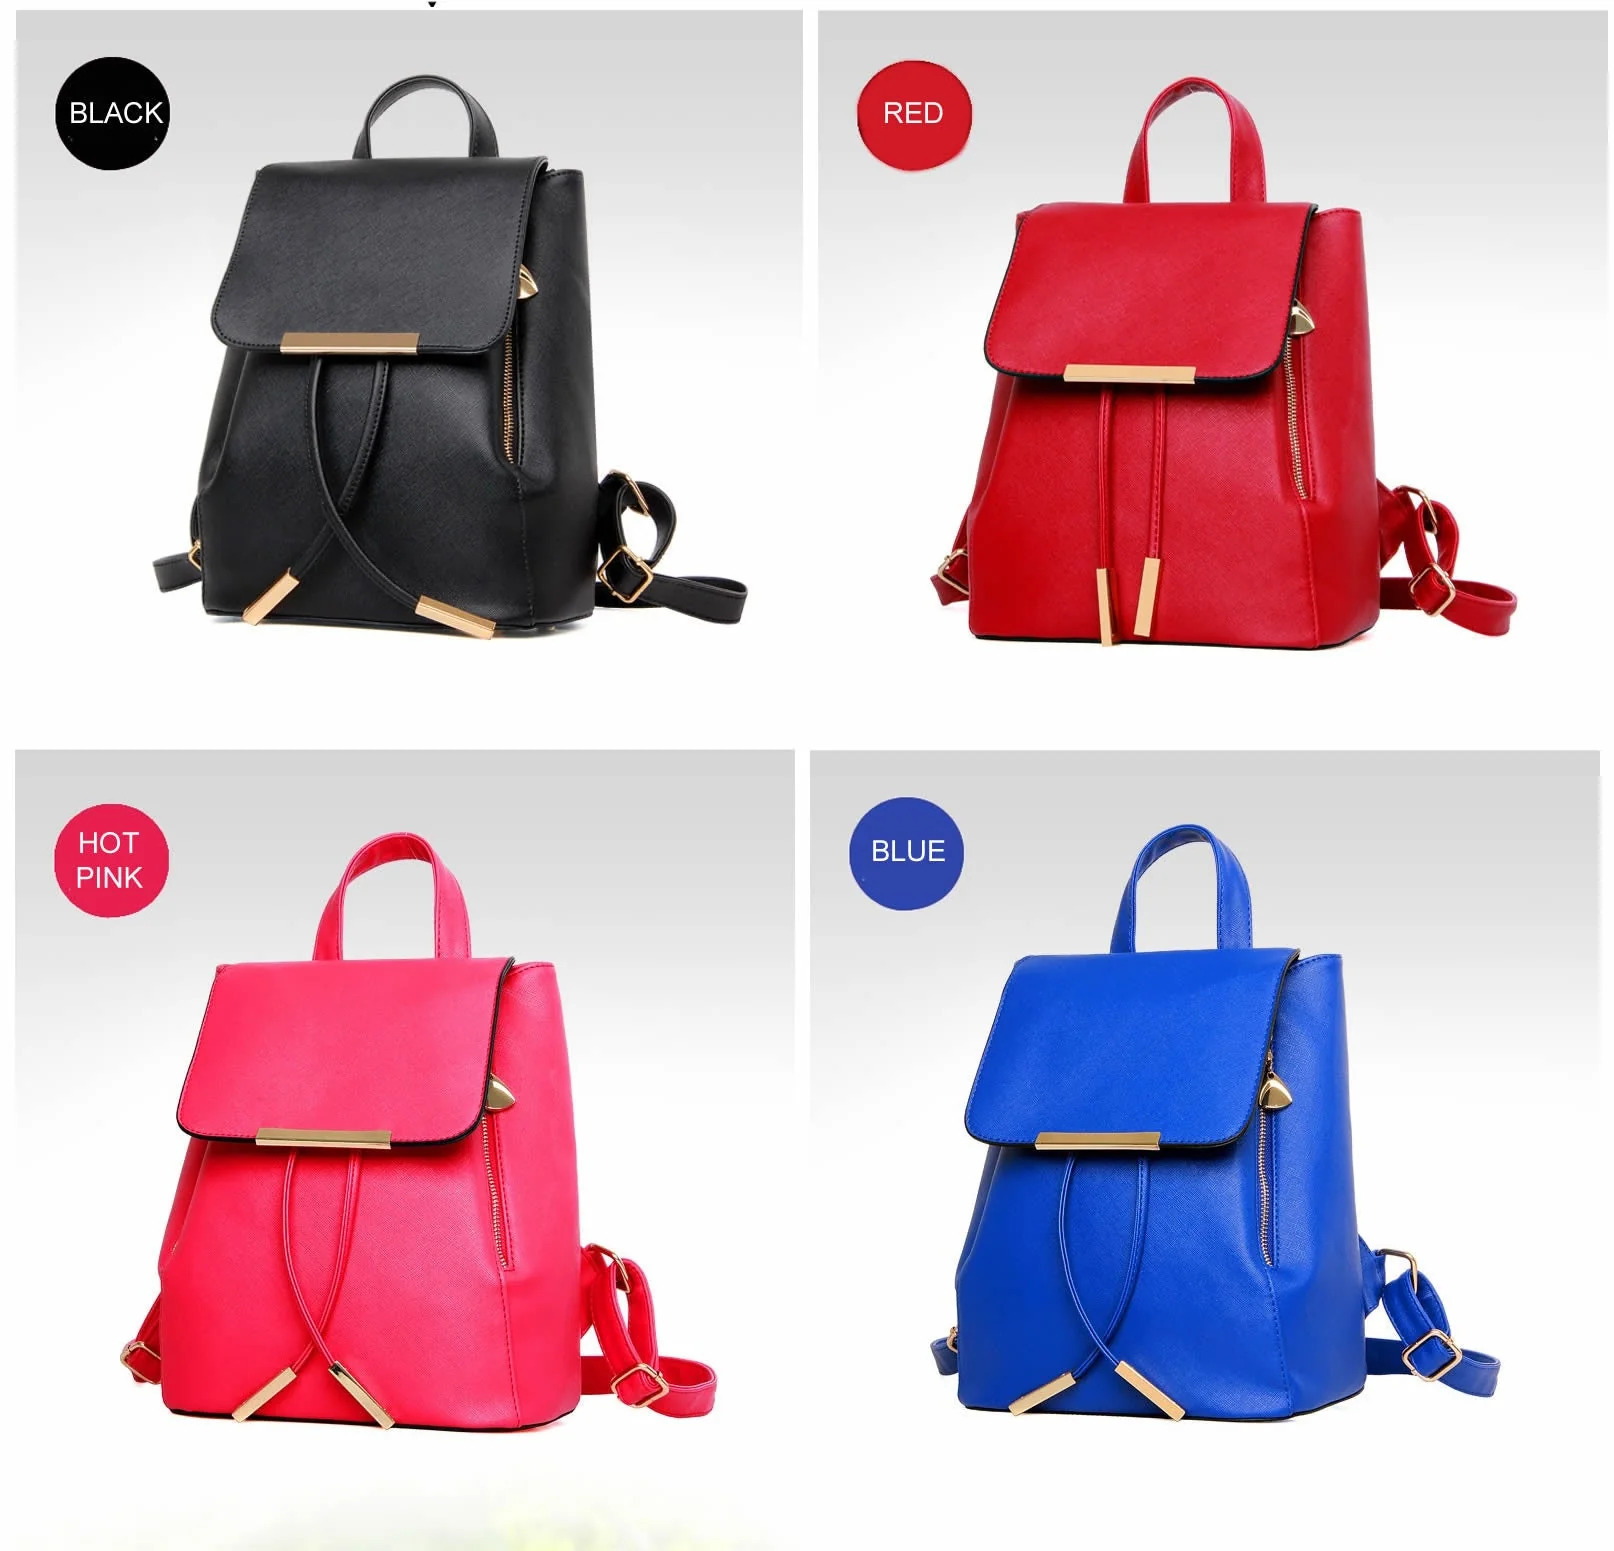 Katalina Classic Handbag Convertible To Backpack - image 2 of 5